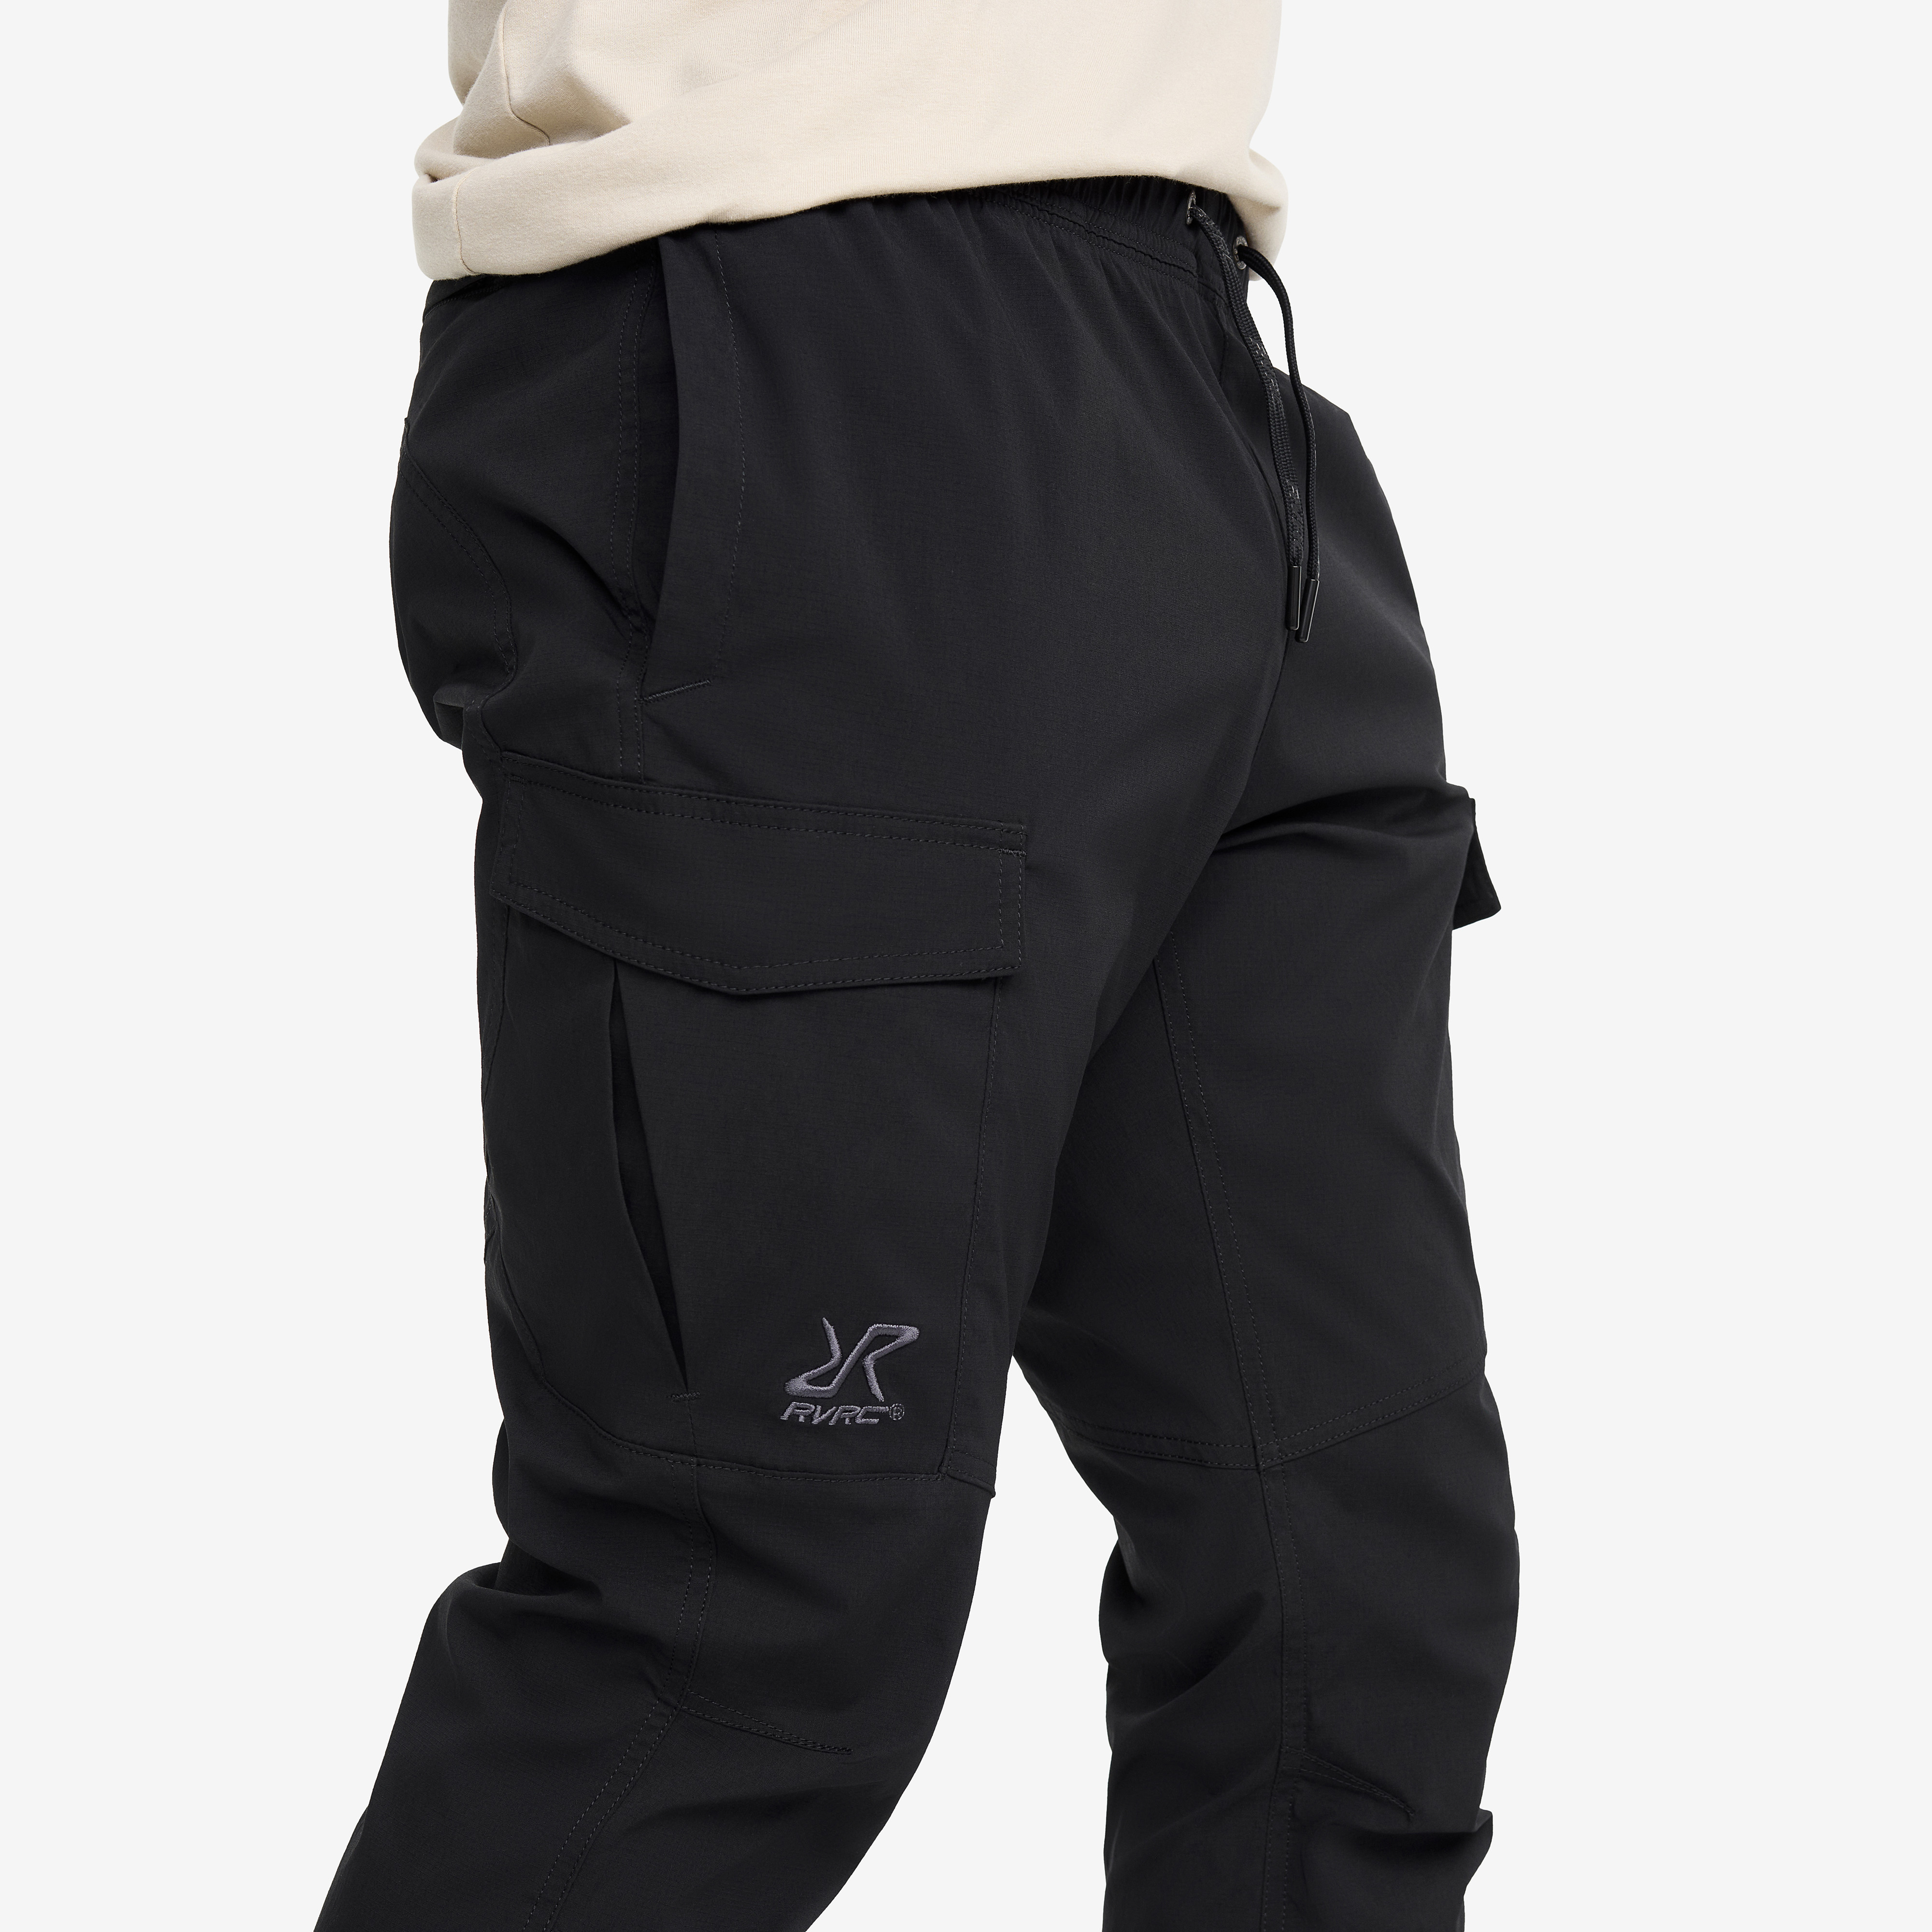 Classic Black Cargo Pants for Men - Size 2XL